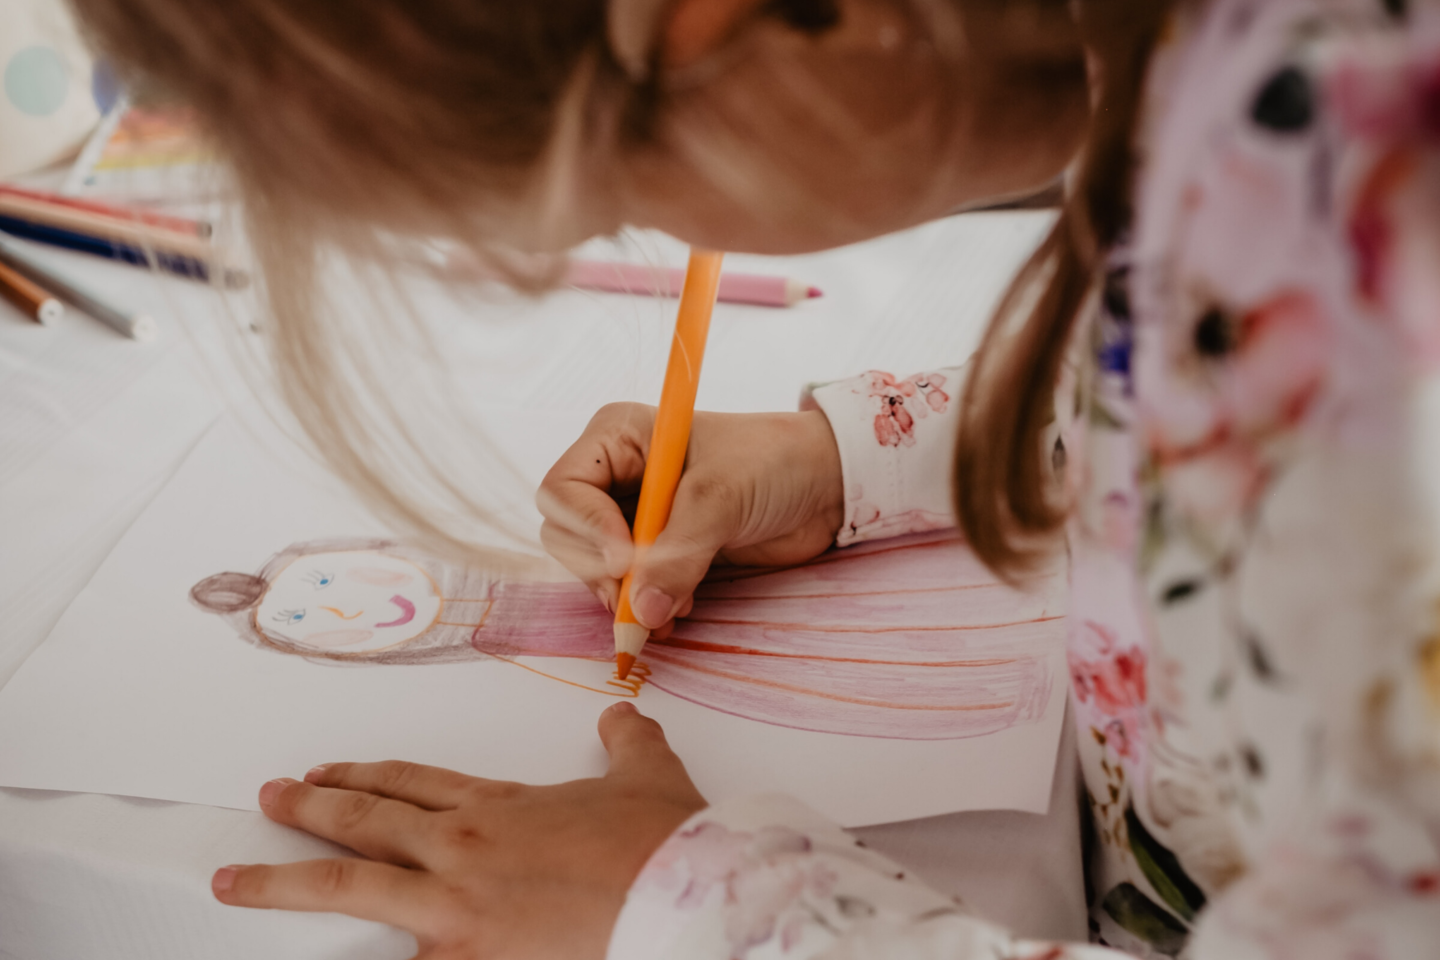 Moksliniai tyrimai rodo, jog tapyba ir menai turi ypatingos reikšmės vaikų vystymuisi ir augimui.<br>Unsplash.com nuotr.